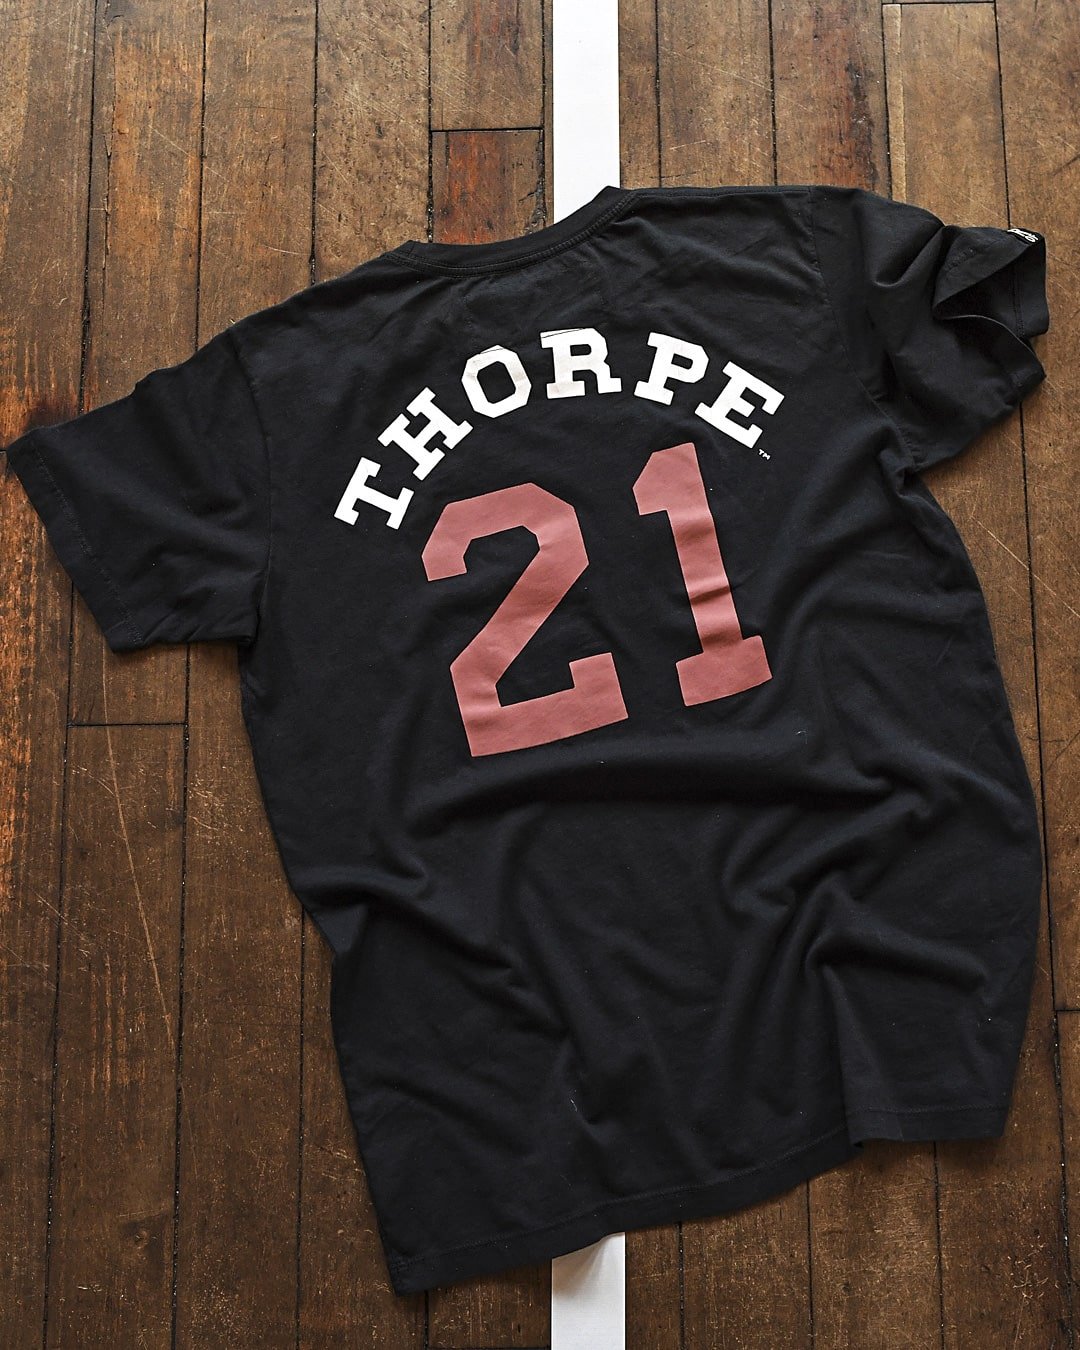 Jim Thorpe #21 Black Tee - Roots of Fight